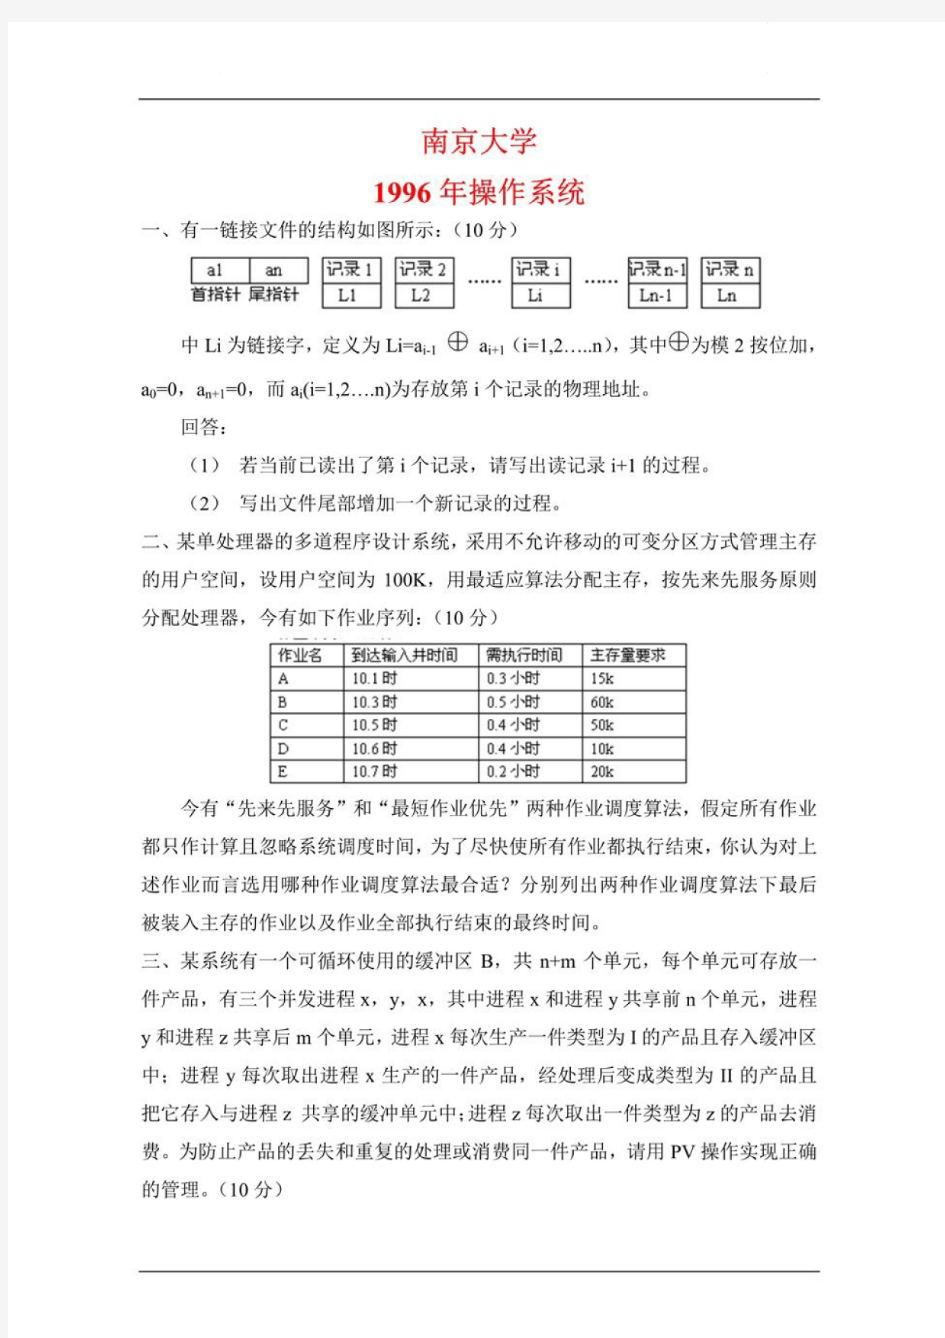 南京大学842数据结构、软件工程、操作系统和计算机网络96-08.13-18年真题